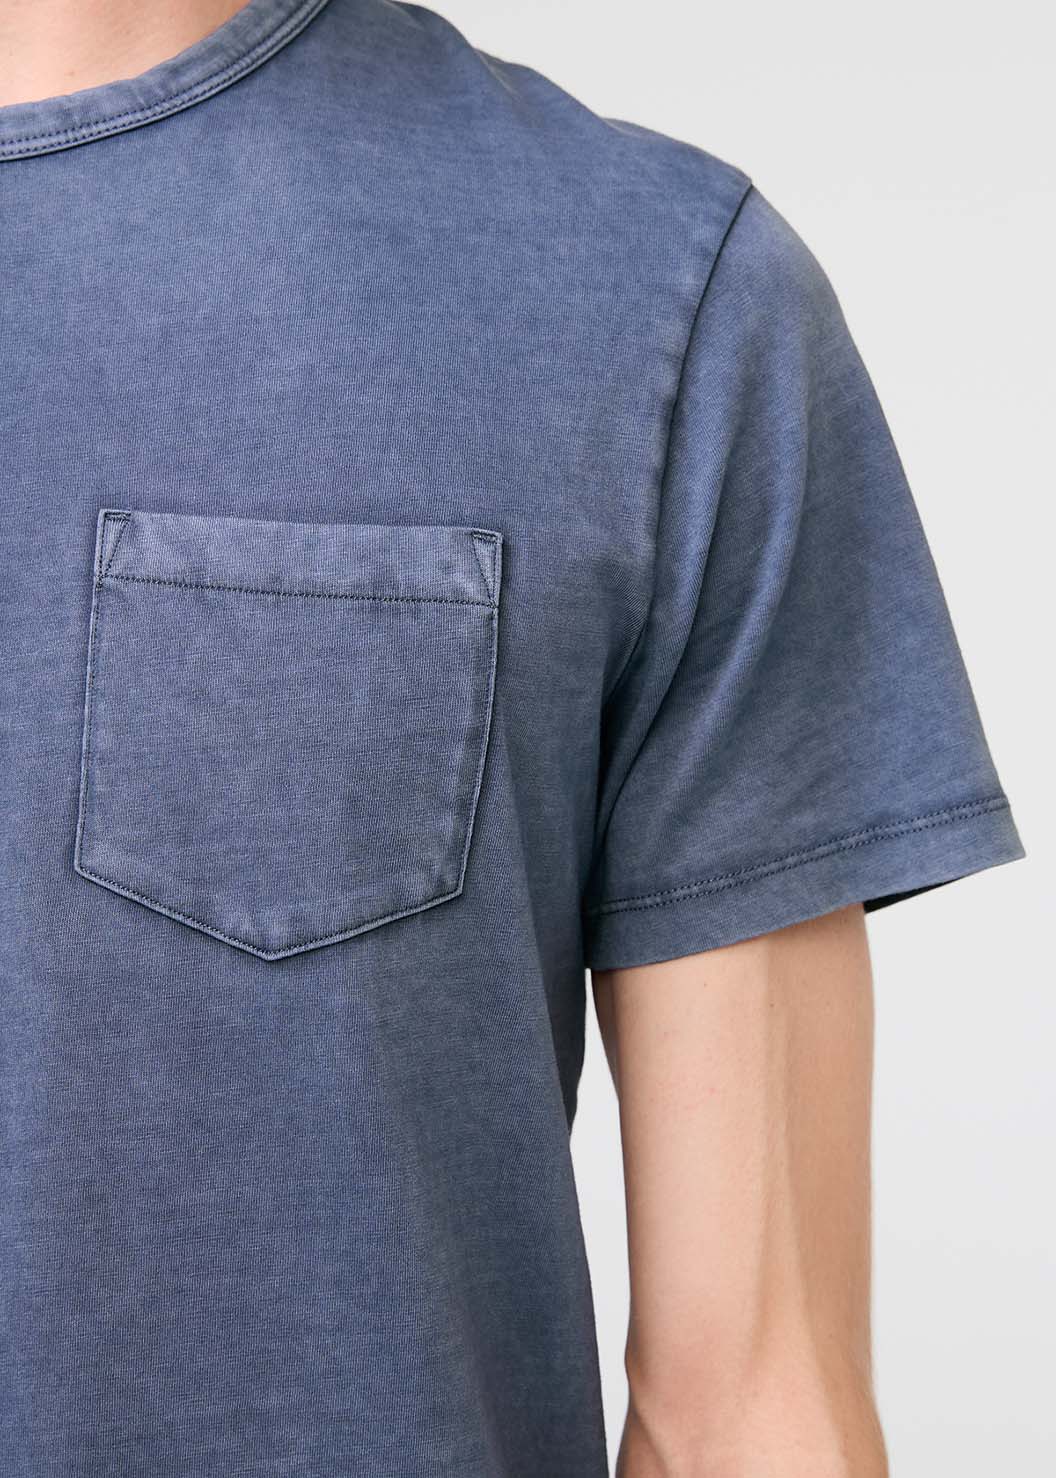 mens pima cotton vintage style blue t-shirt pocket detail